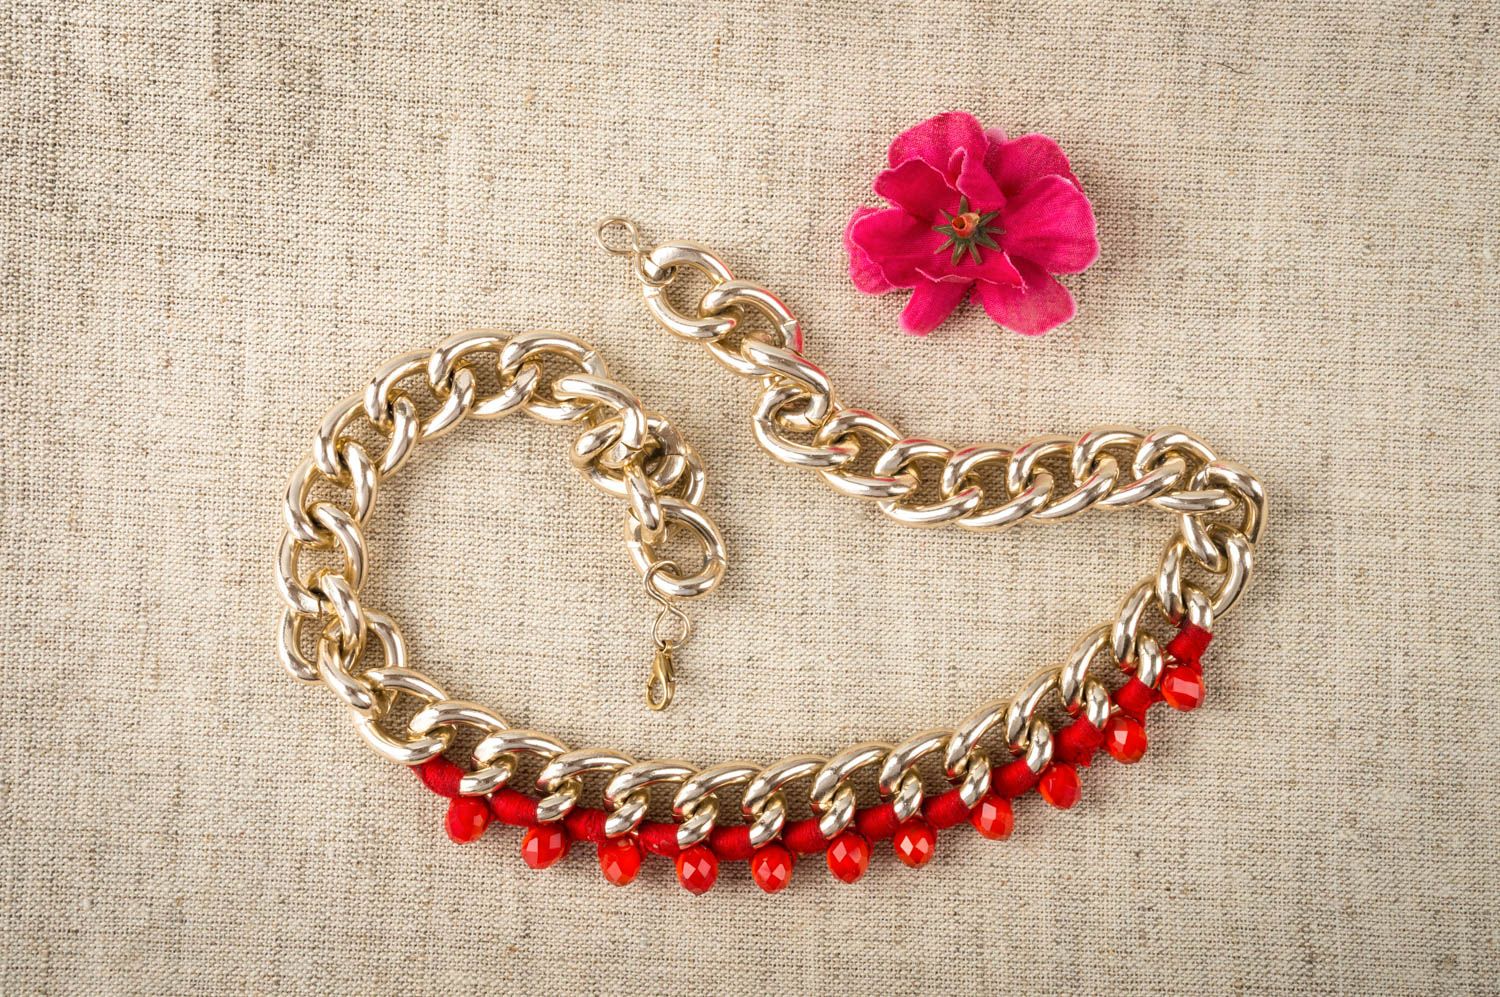 Красное ожерелье с кристаллами нарядное для девушки оригинальное ручной работы фото 1